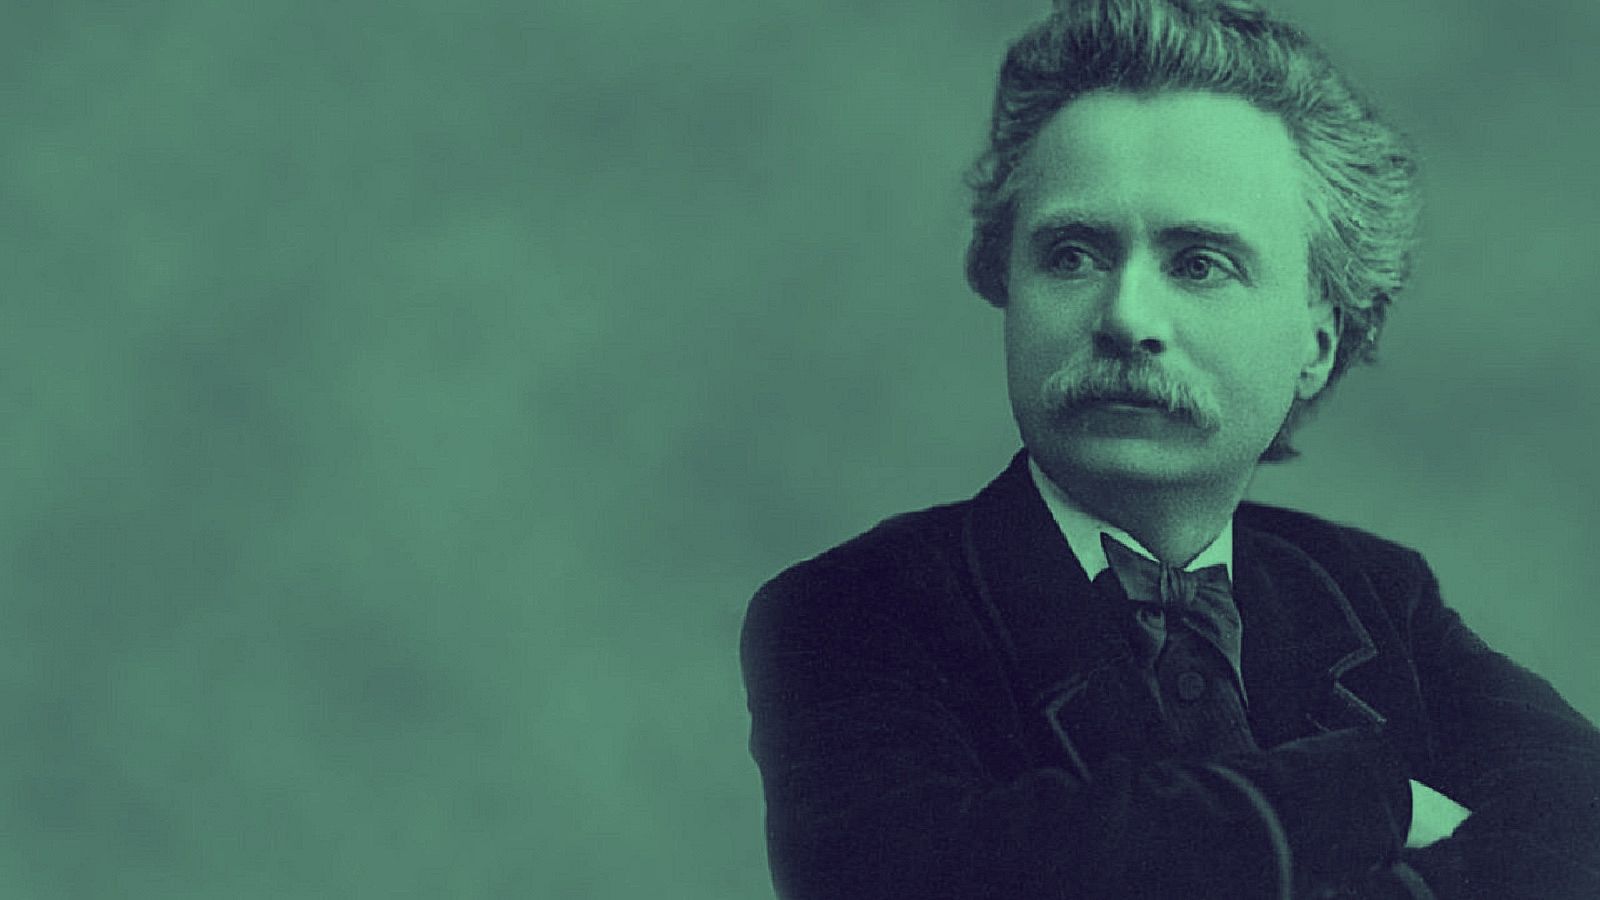 Descubre la música del compositor noruego Edvard Grieg en Radio Clásica